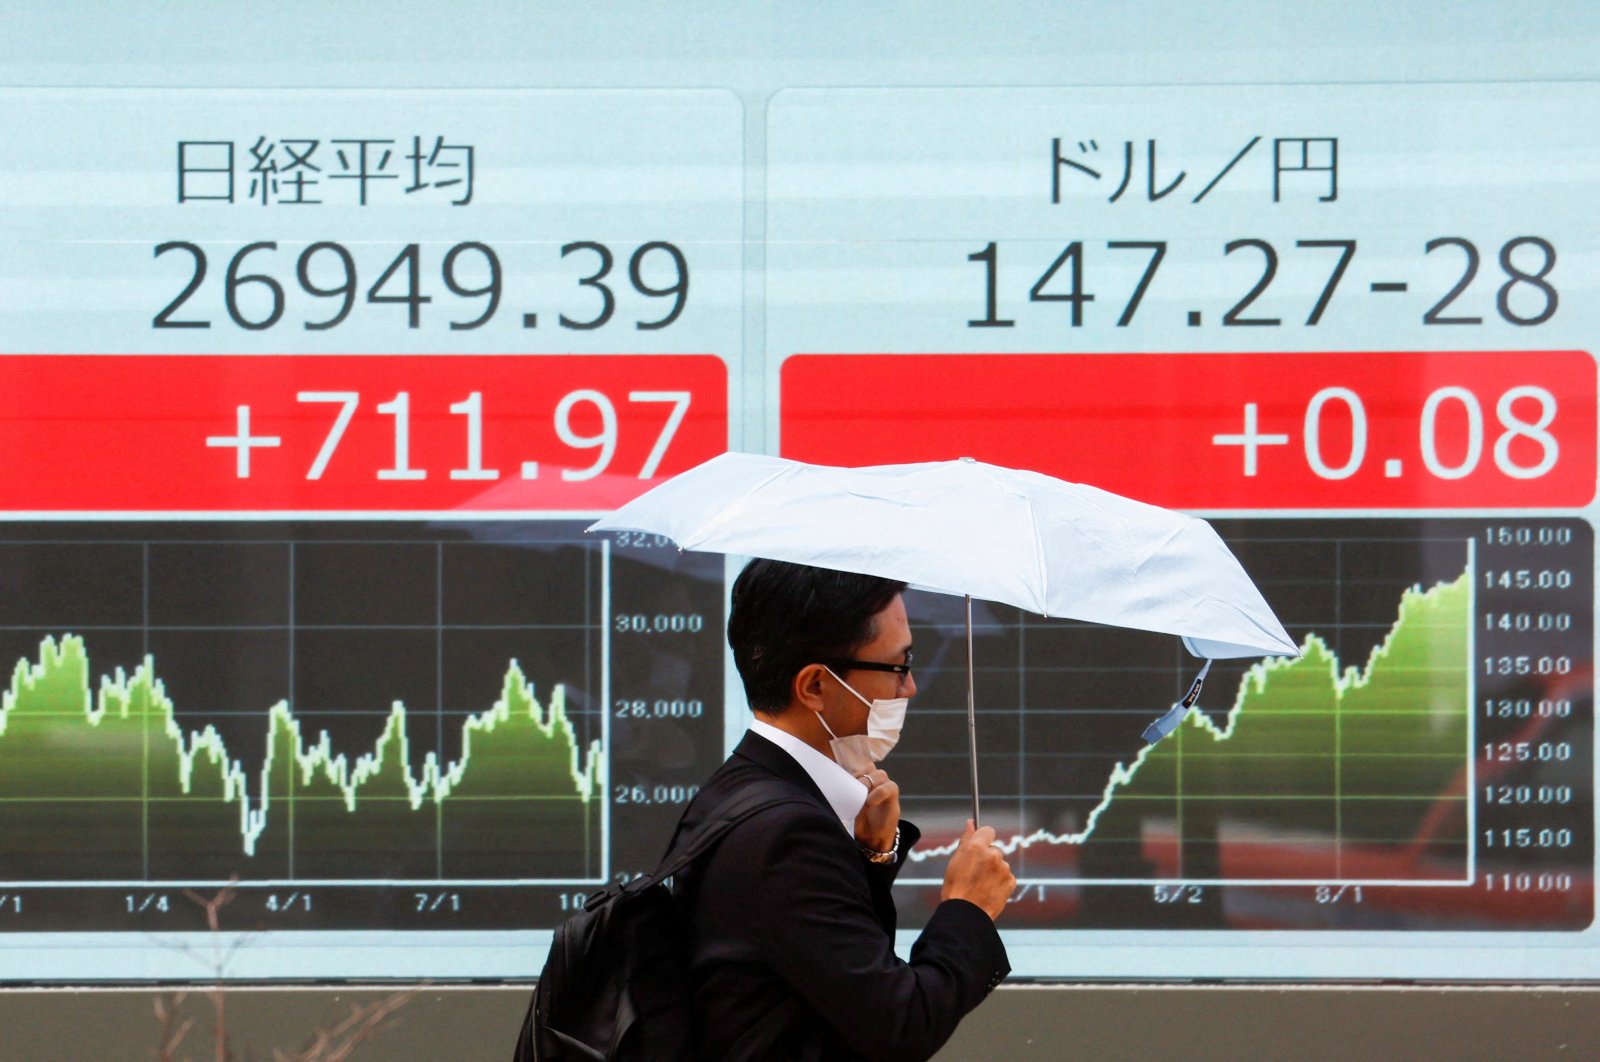 Jepang menghabiskan rekor hampir  miliar pada bulan Oktober untuk menopang yen